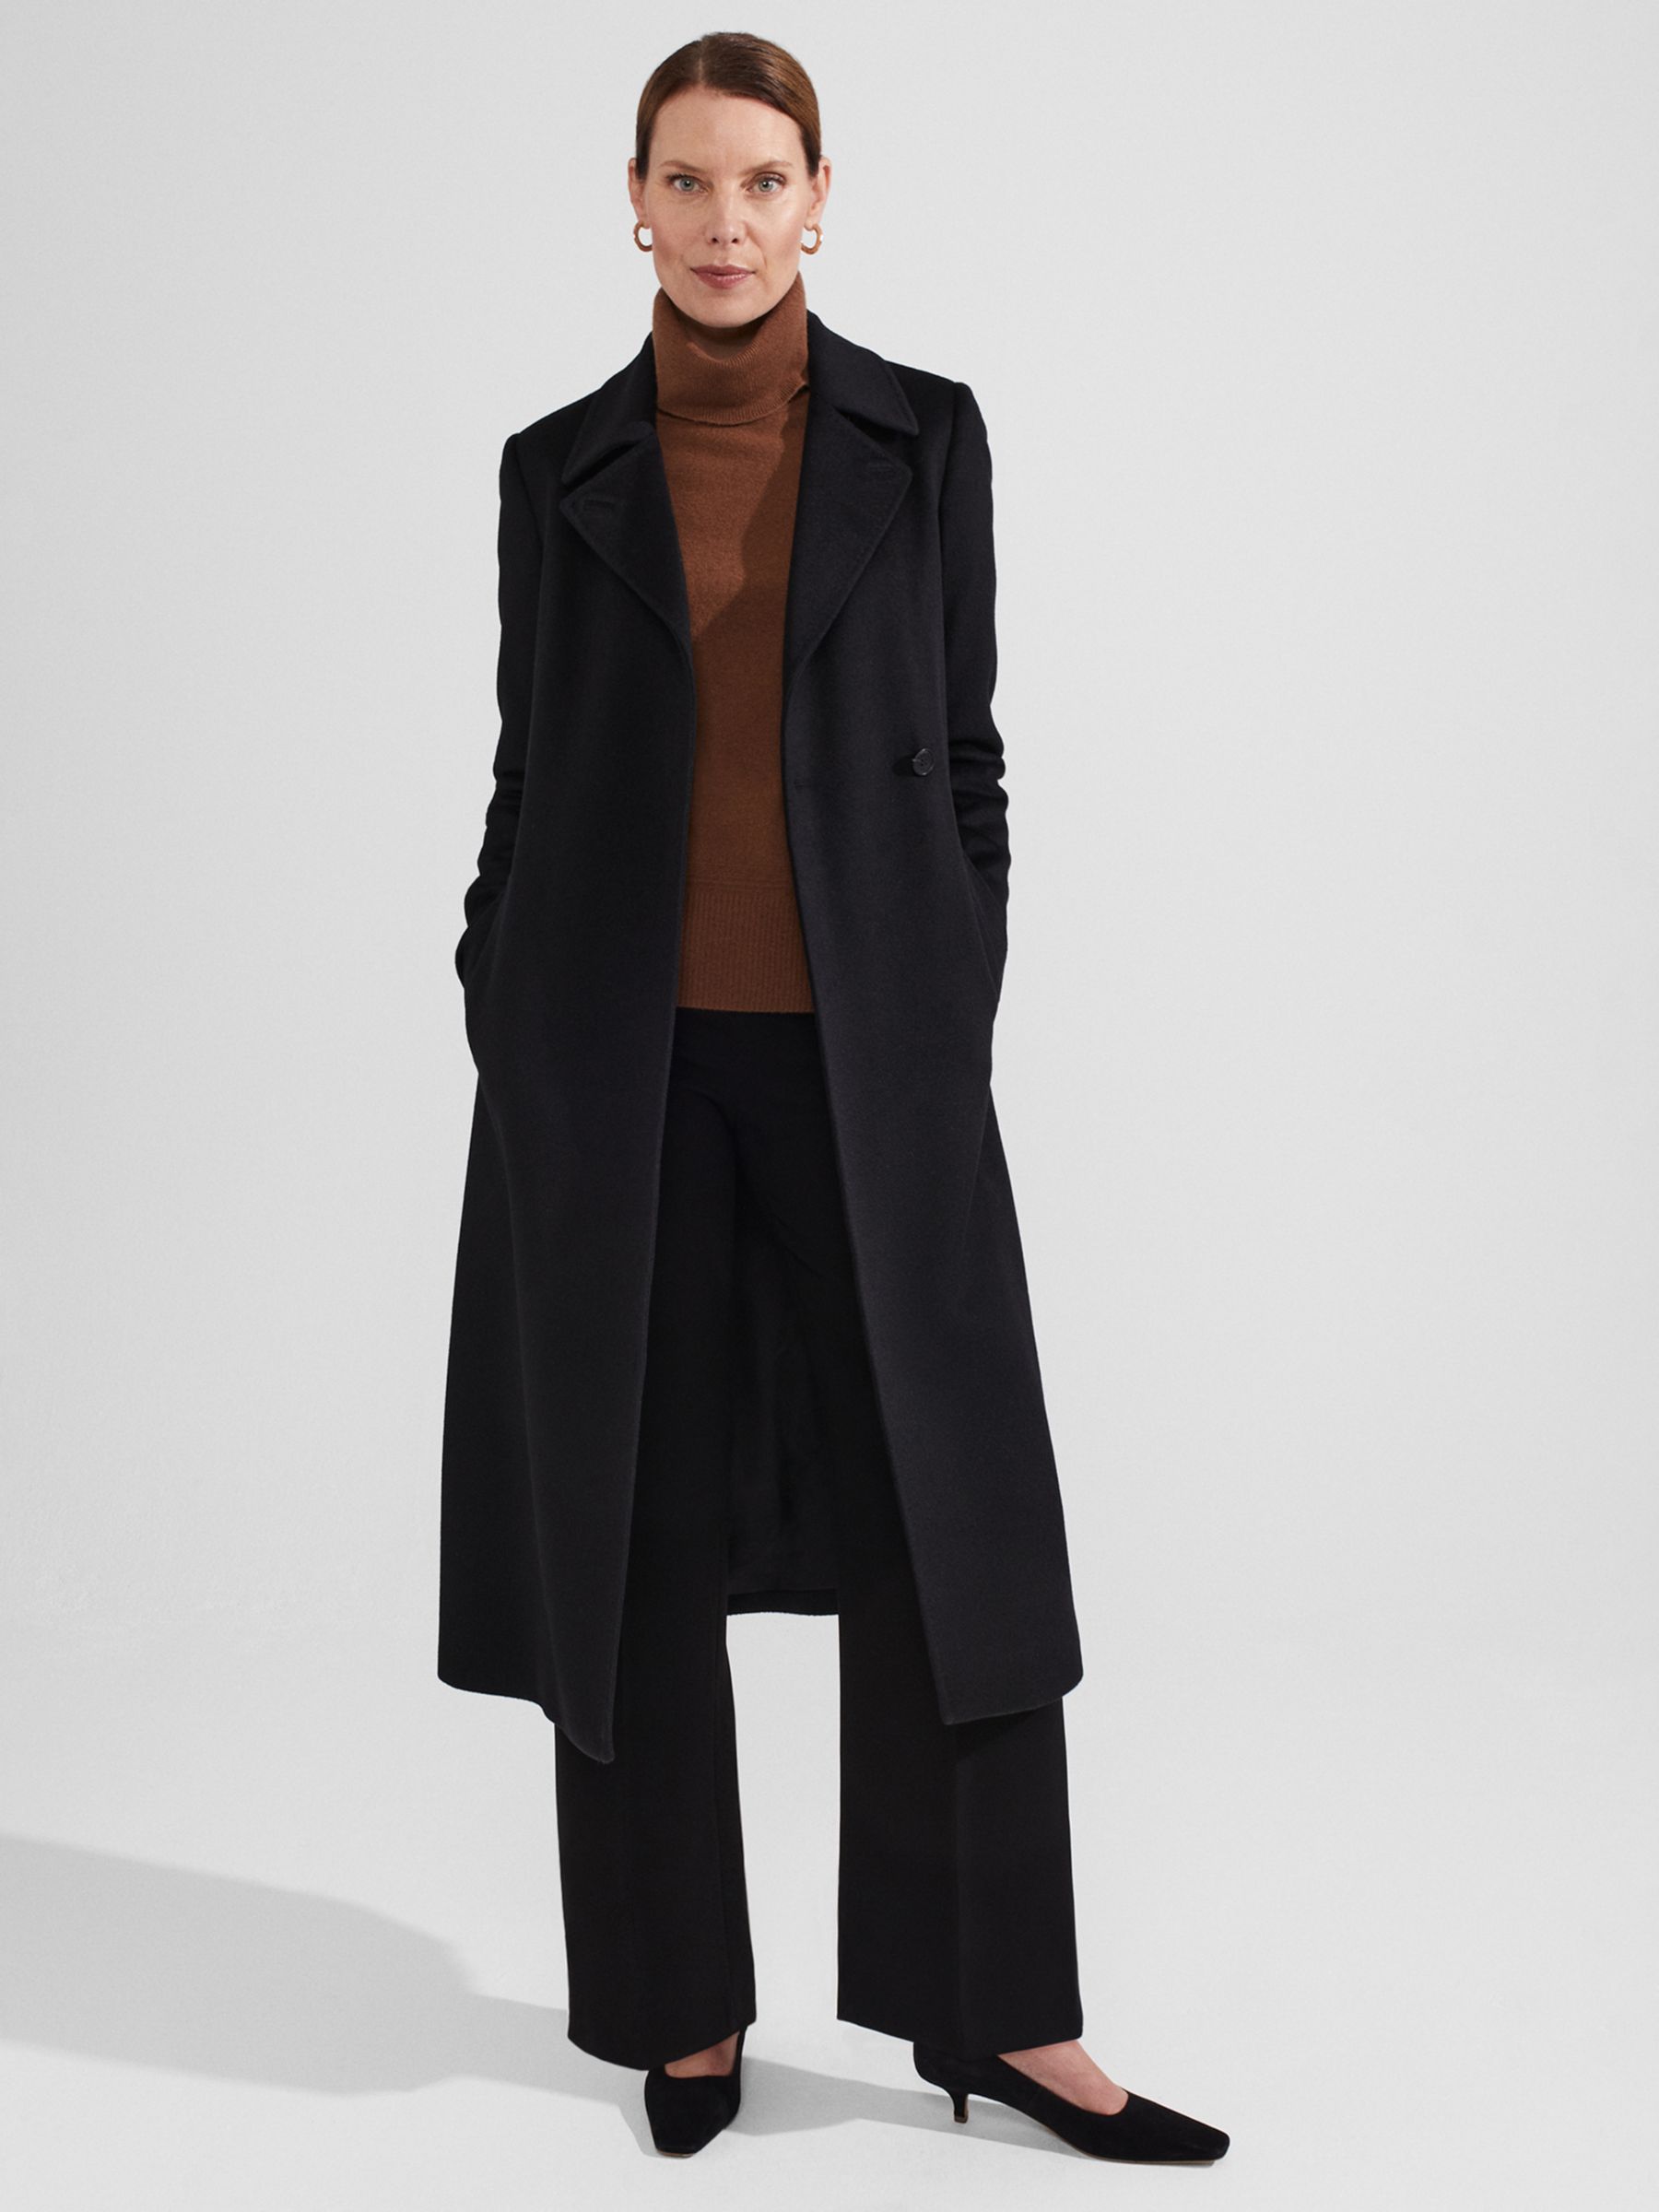 Hobbs Livia Wool Coat, Black at John Lewis & Partners